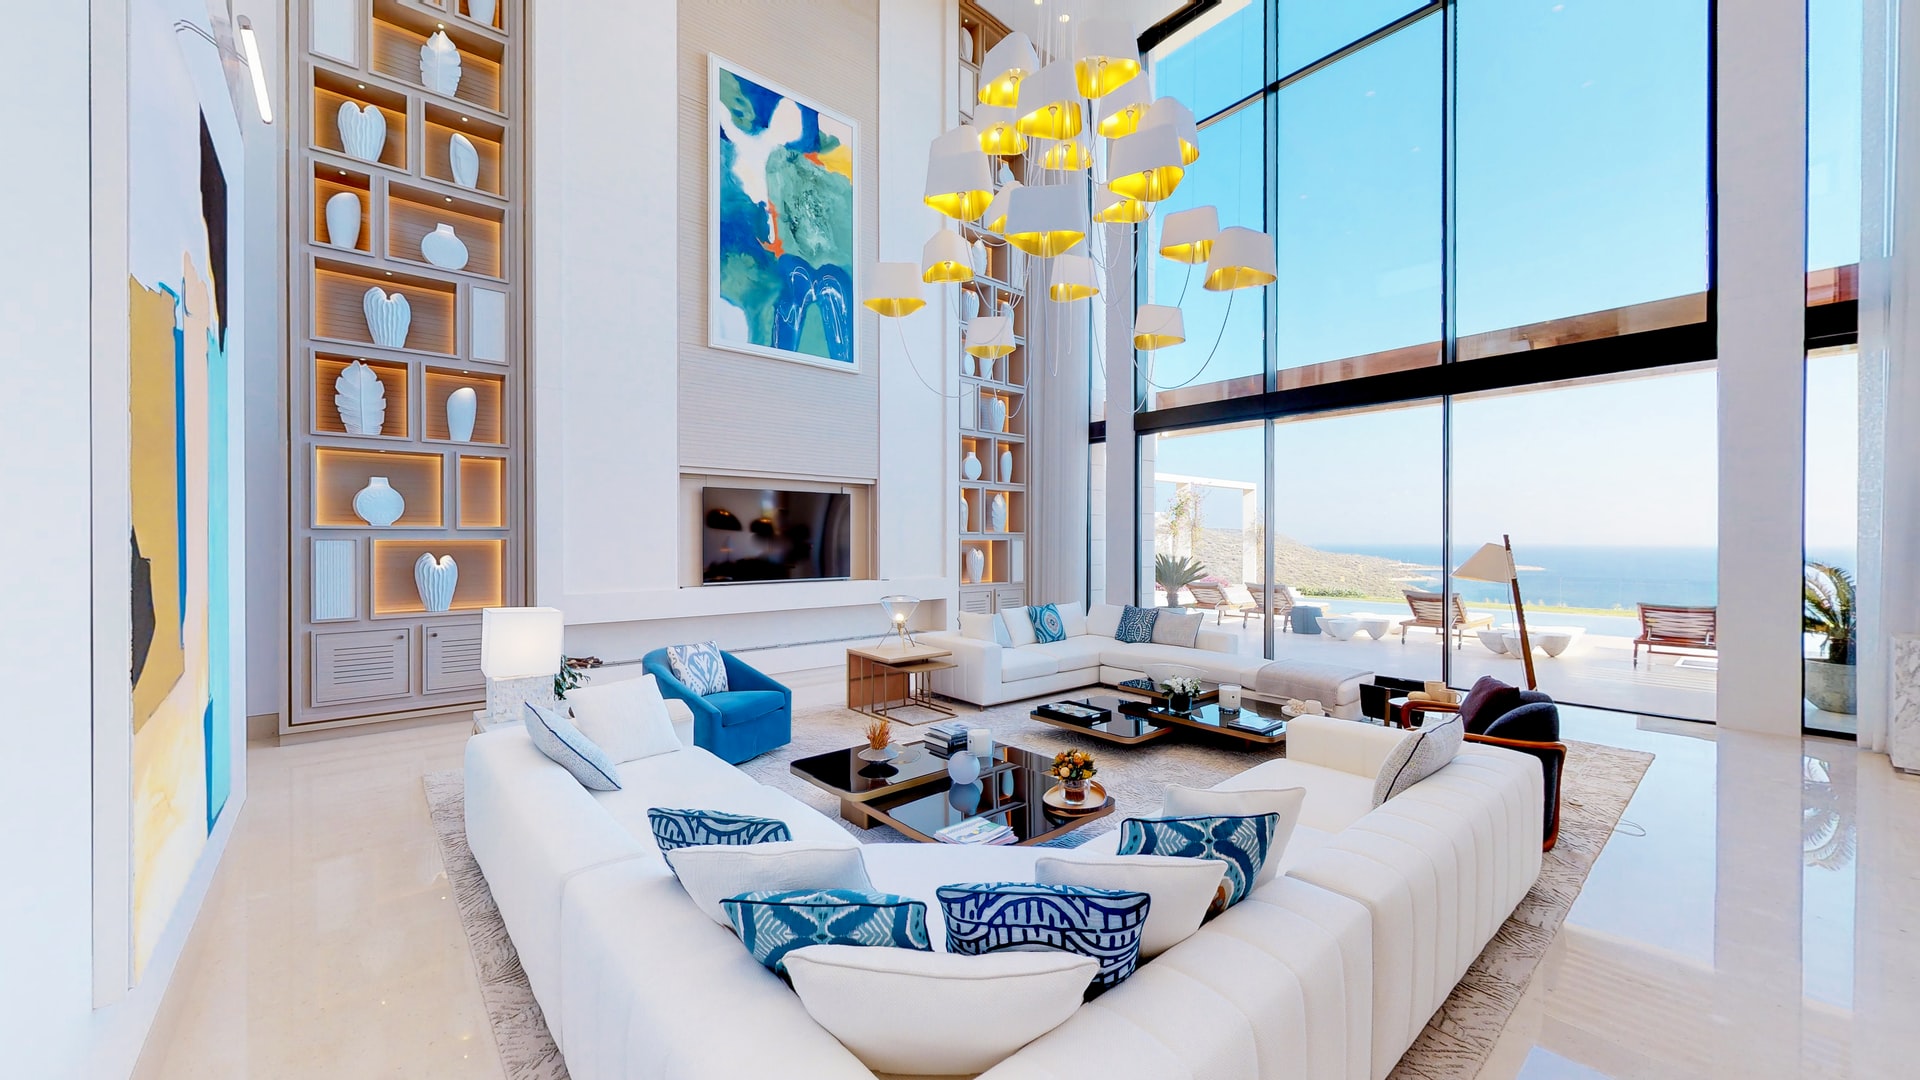 Apartamento de luxo: imagem de uma sala de estar com decoração sofisticada e vidraças espaçosas com vista para o mar